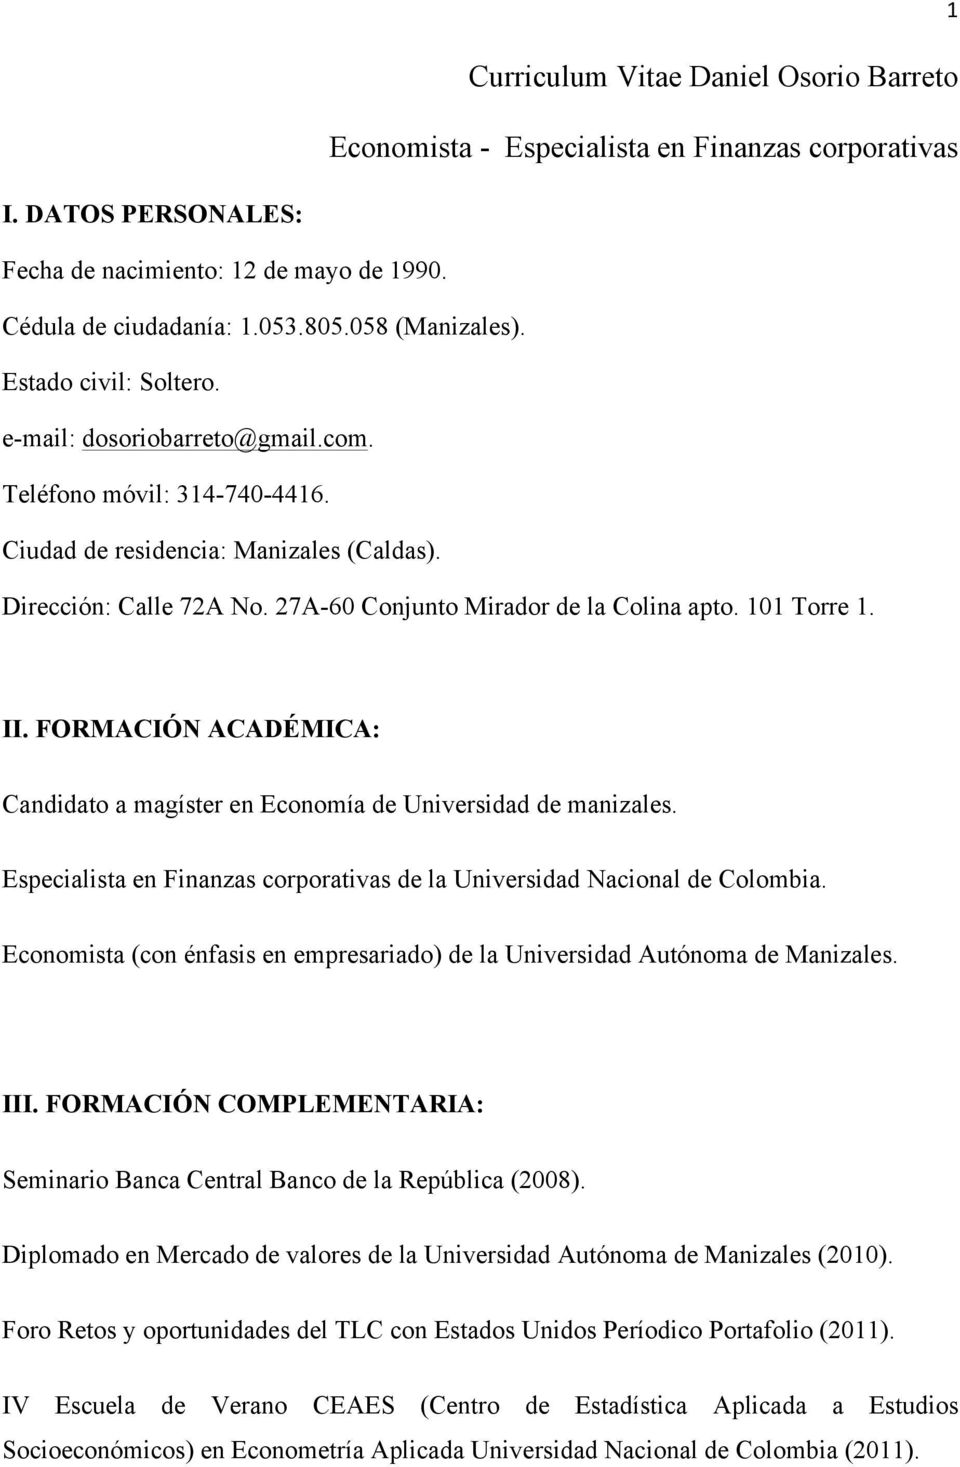 FORMACIÓN ACADÉMICA: Candidato a magíster en Economía de Universidad de manizales. Especialista en Finanzas corporativas de la Universidad Nacional de Colombia.